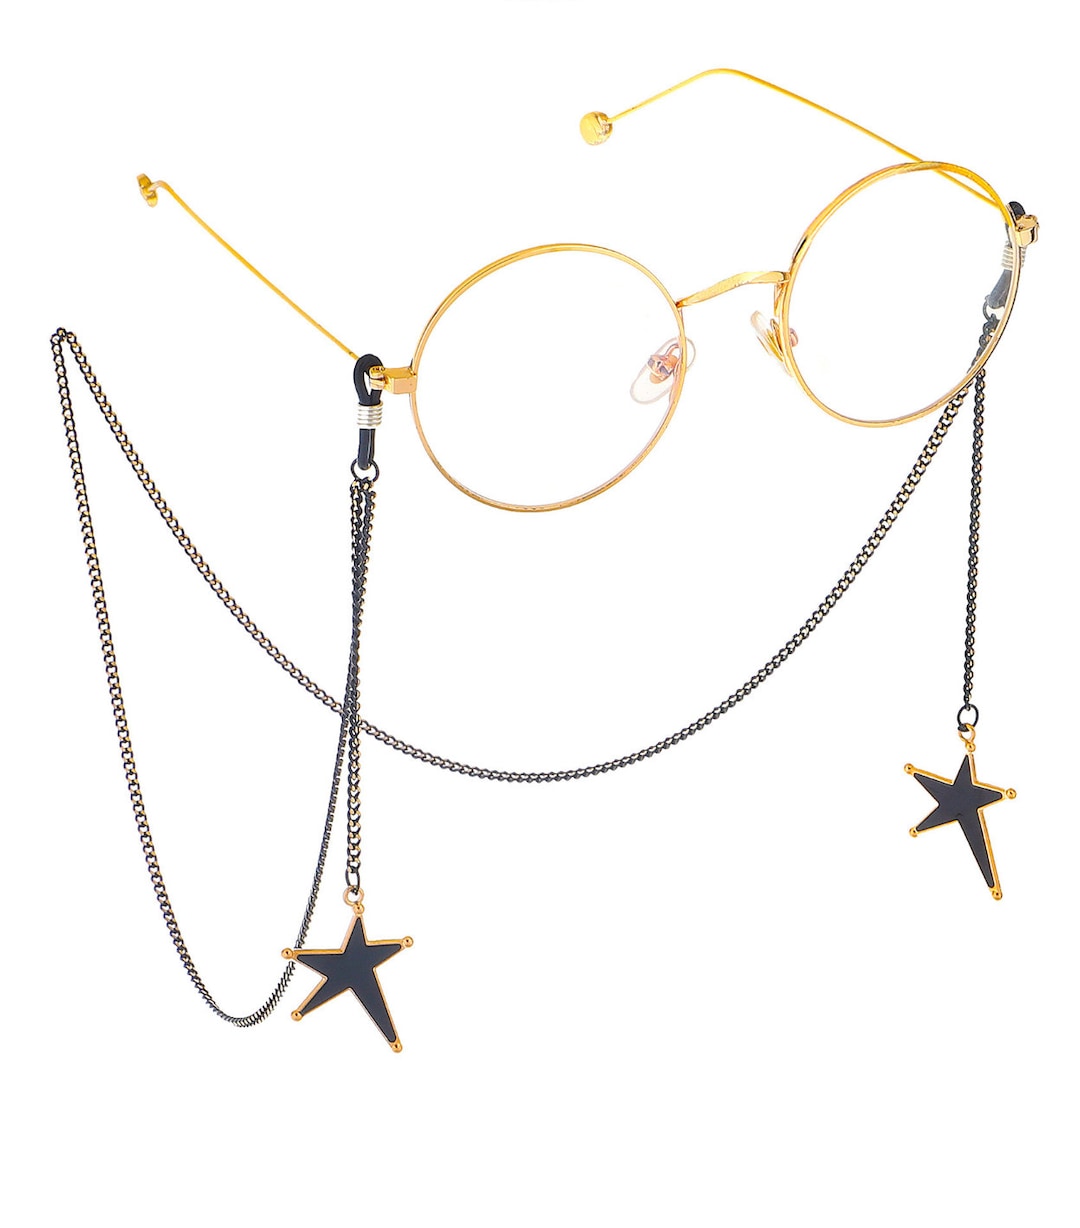 Star Glasses Chain/irregular Star Glasses Chain/glasses - Etsy